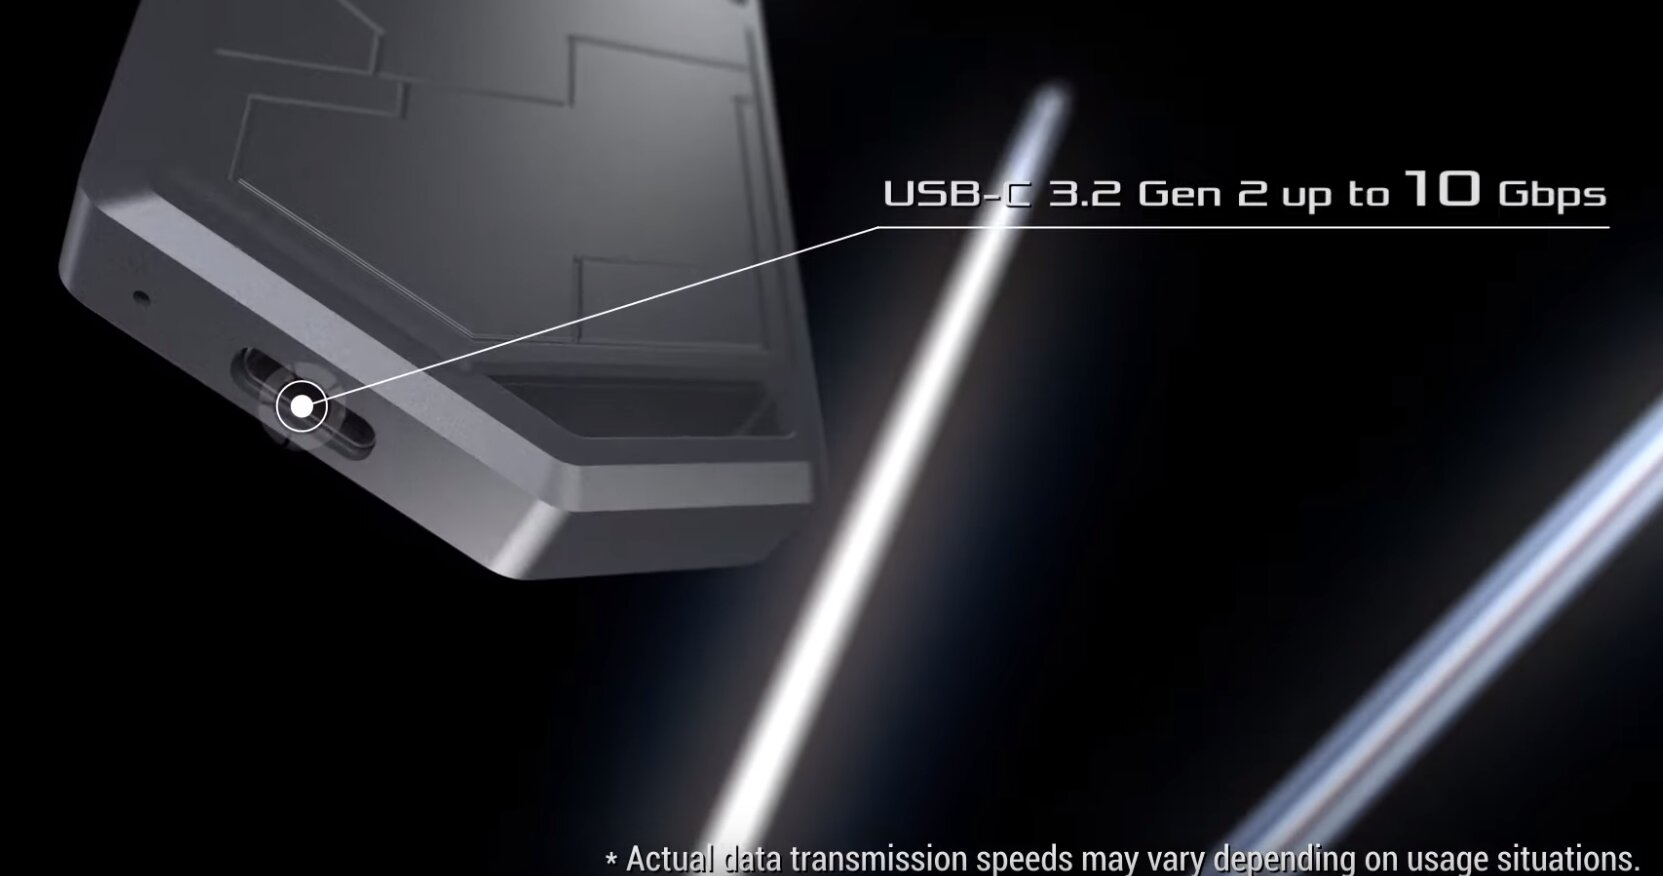 SSD-Gehäuse ROG Strix Arion mit USB 3.2 Gen 2